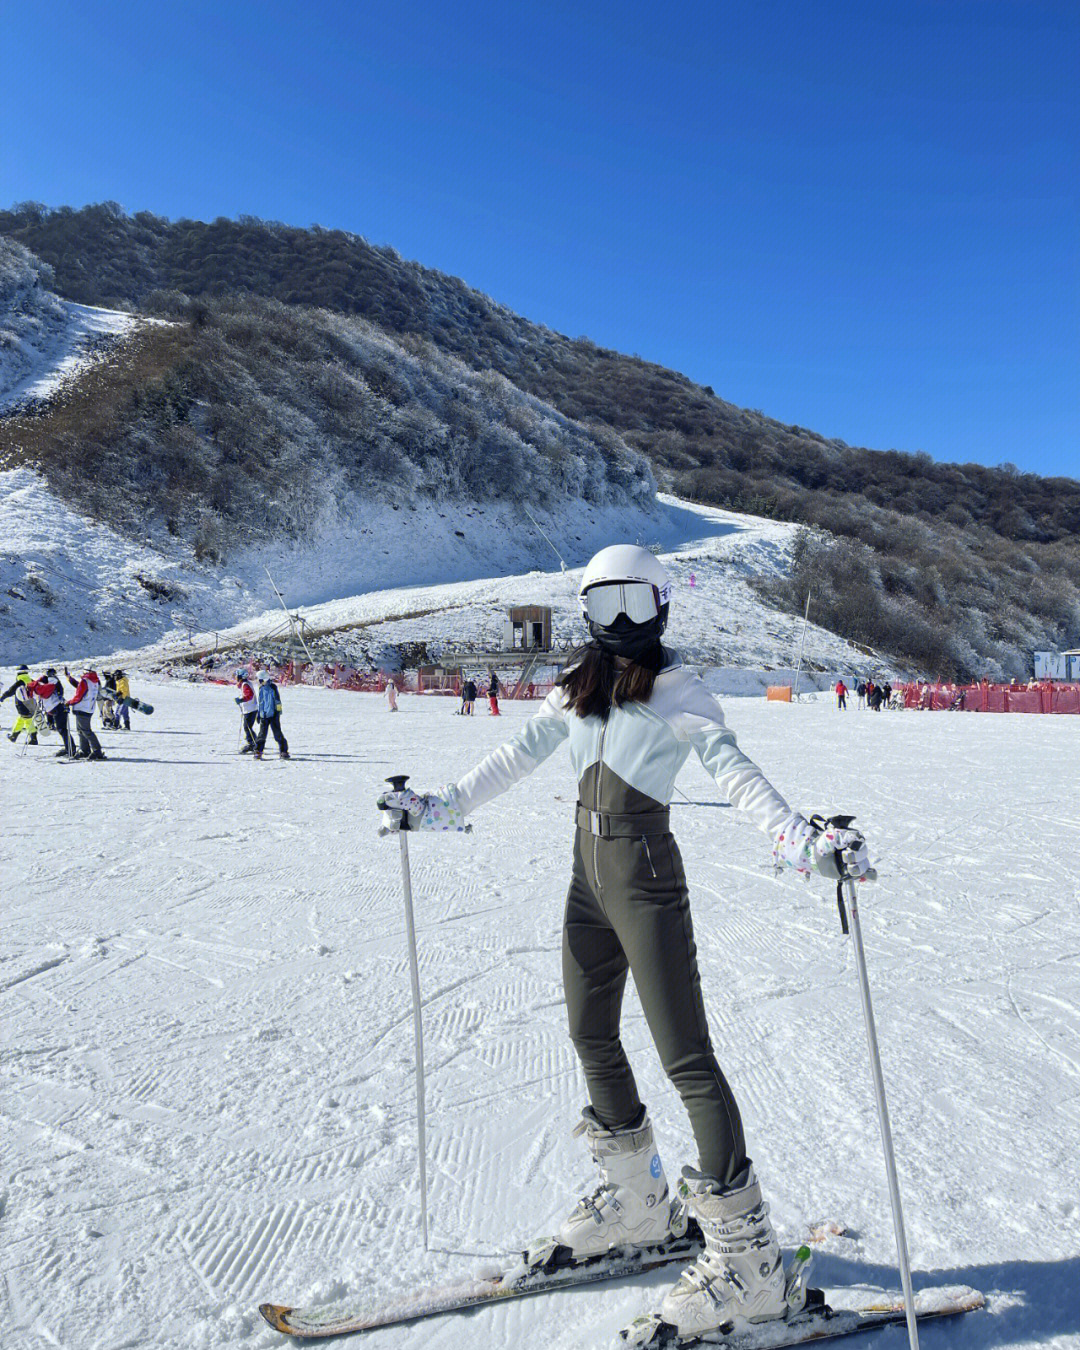 太子岭滑雪场坡度图片